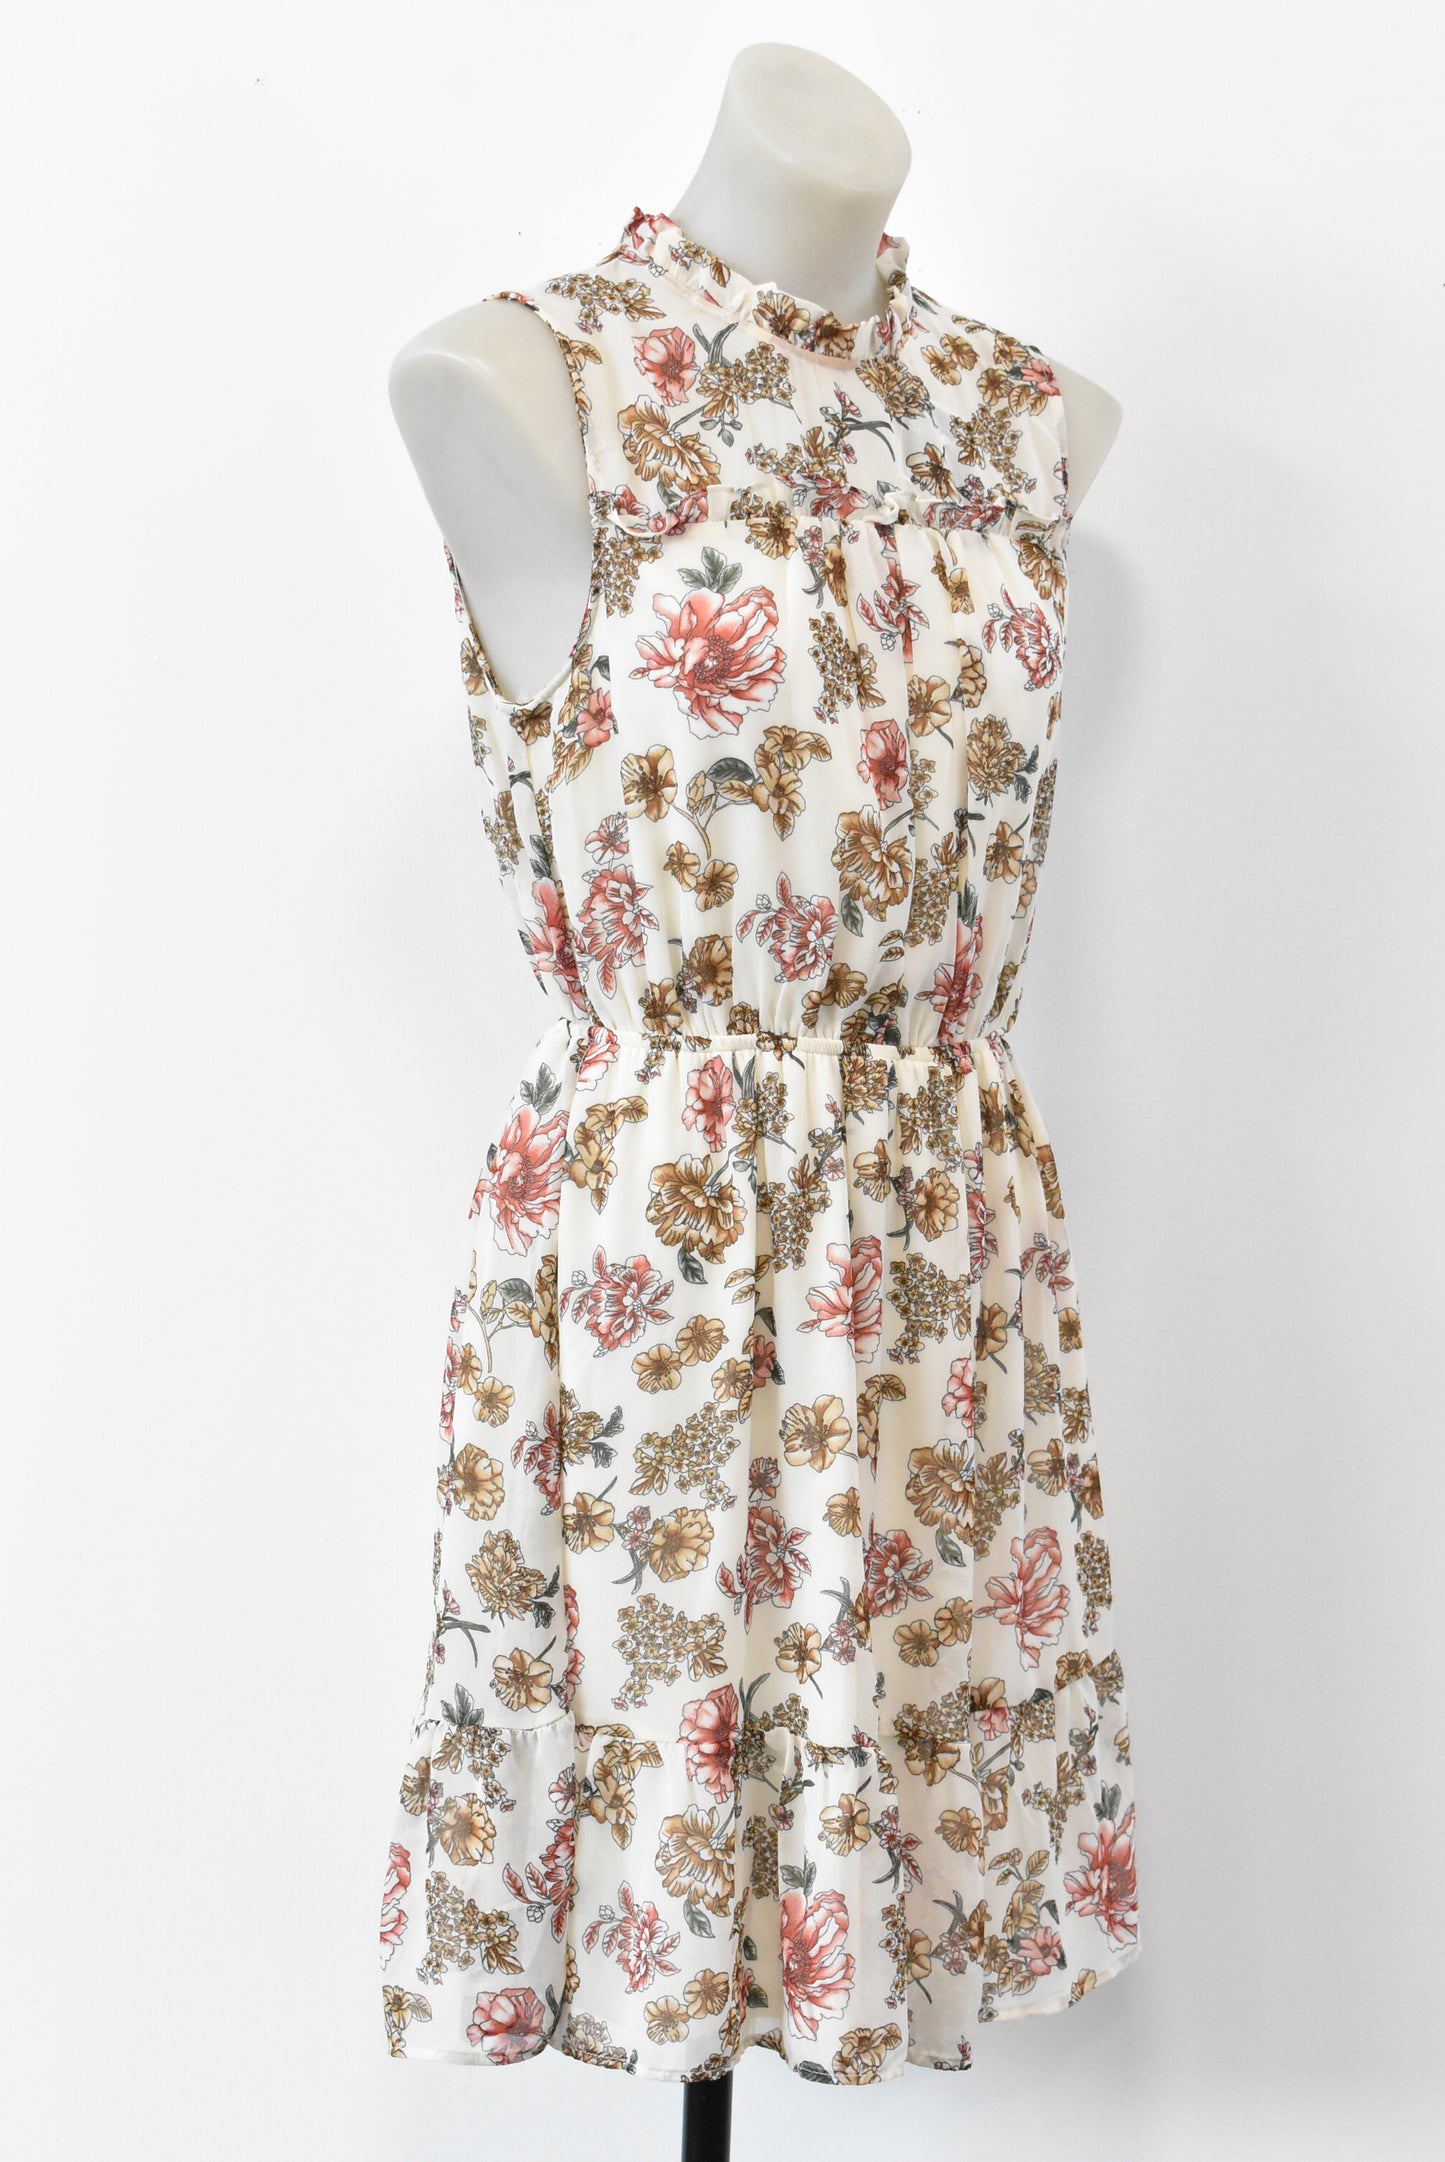 Monteau floral print dress, L